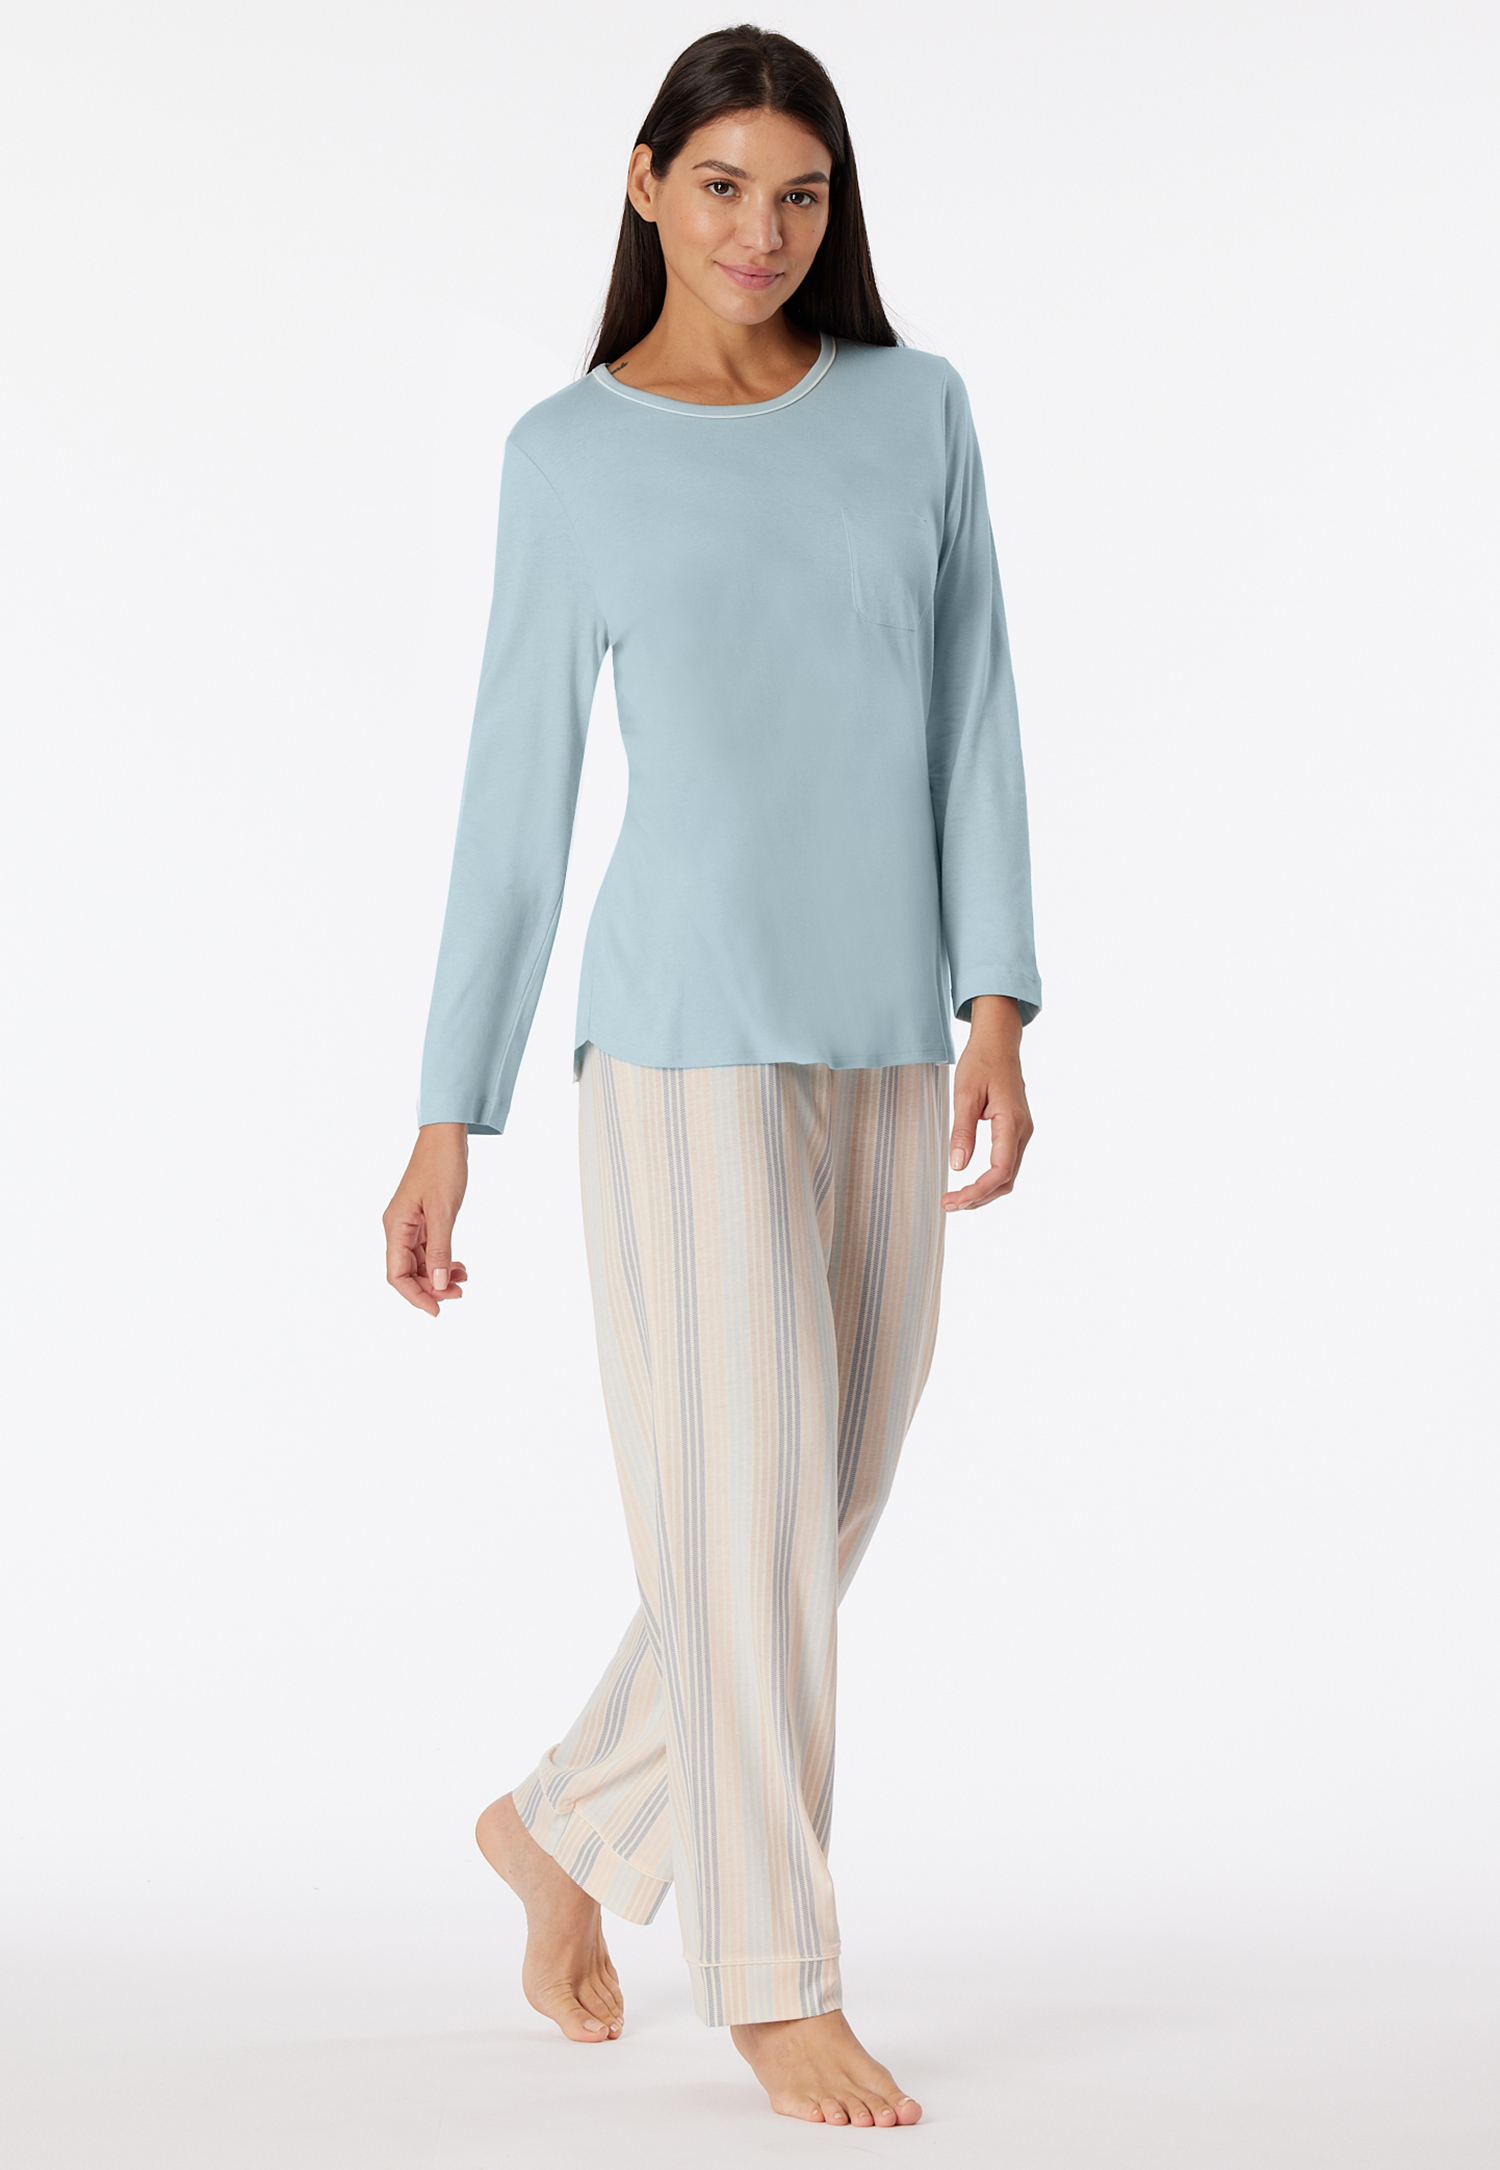 Schlafanzug lang bluebird - Comfort Nightwear 50 von Schiesser